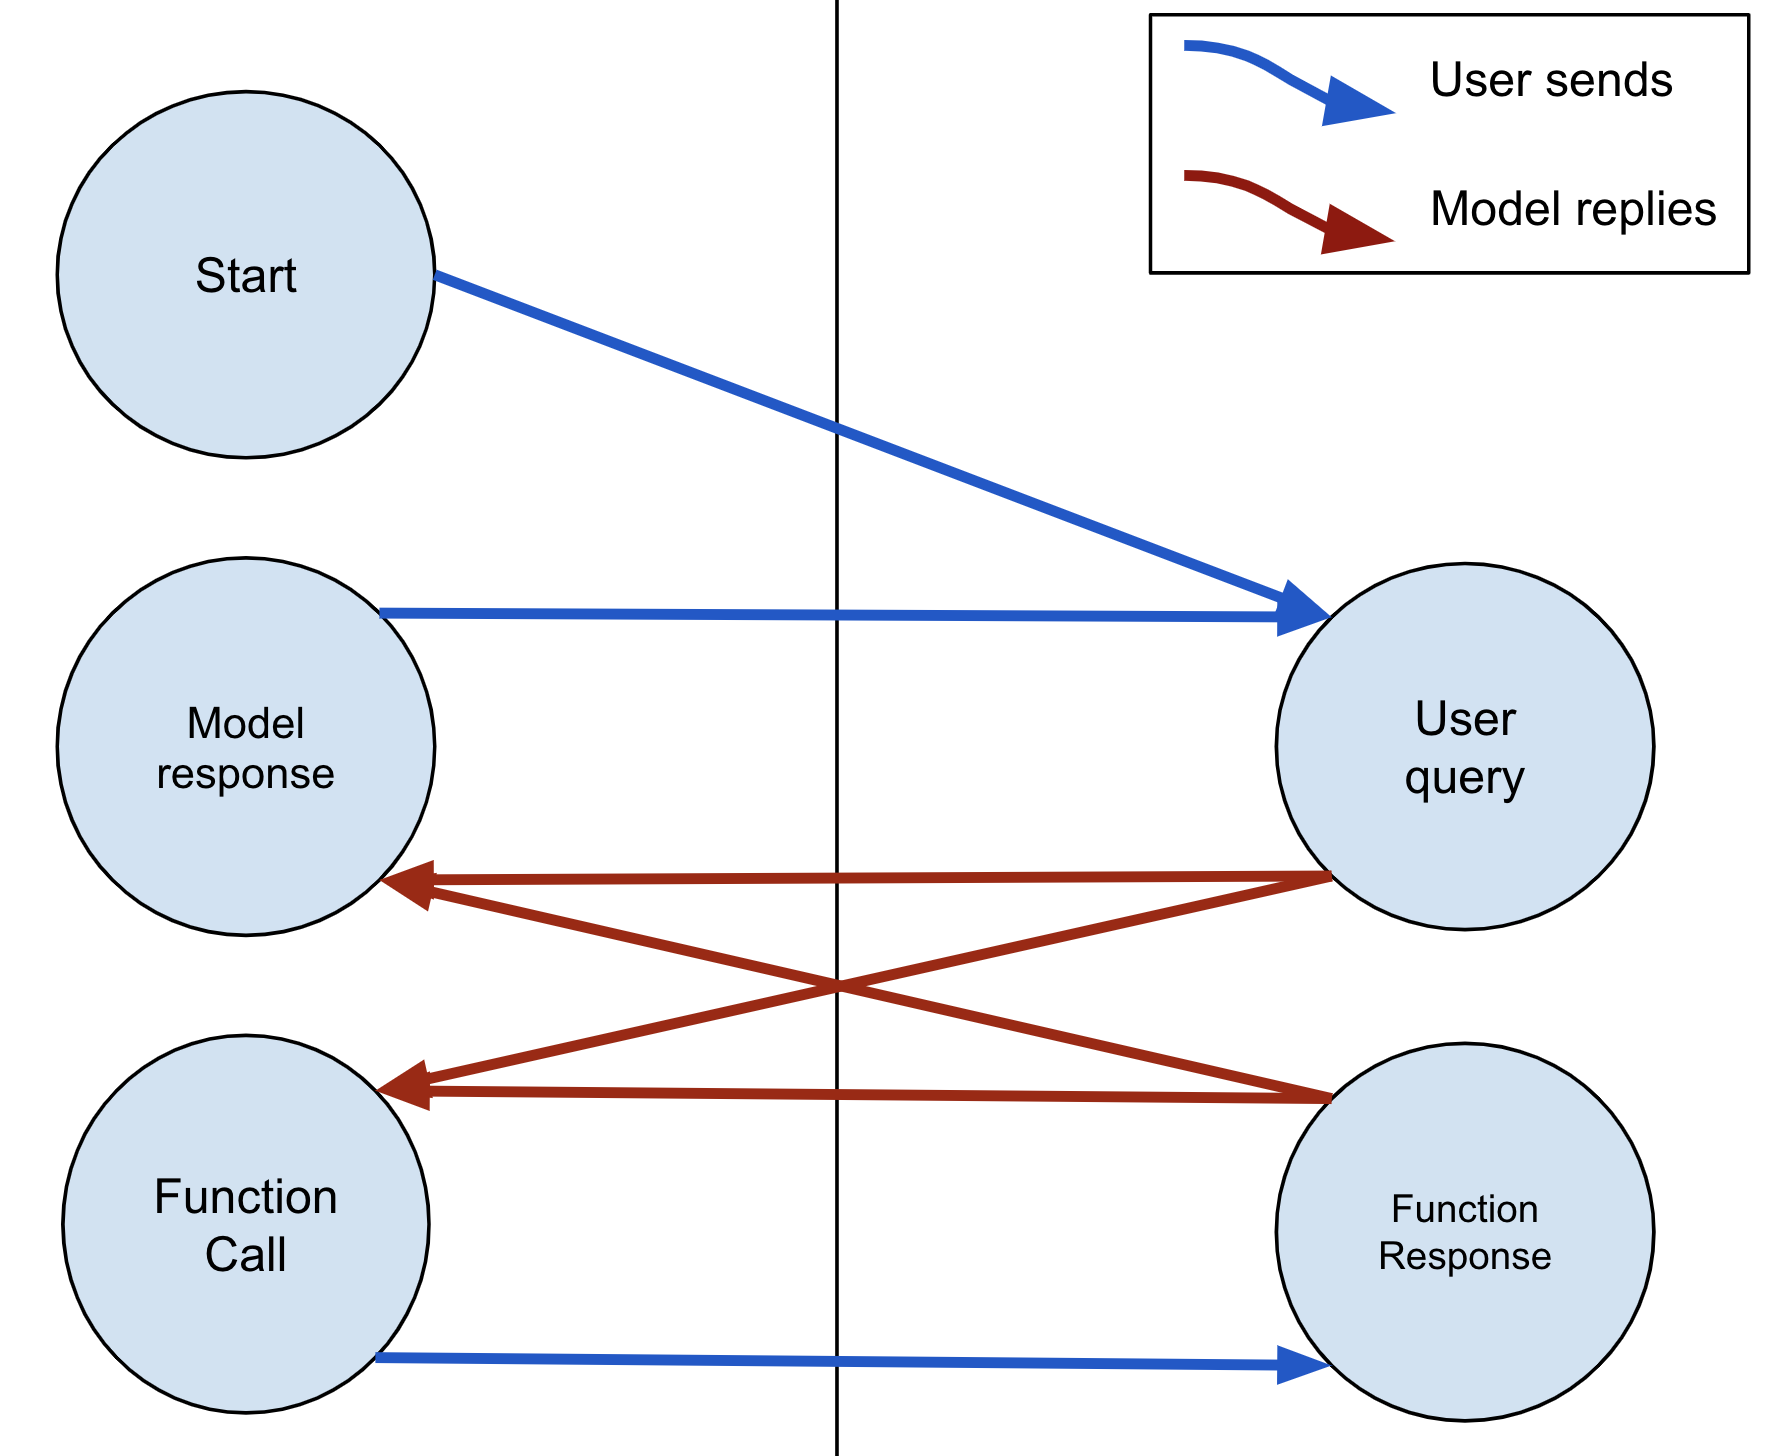 モデルは常にテキストまたは FunctionCall で応答できます。モデルが FunctionCall を送信した場合、ユーザーは FunctionResponse で応答する必要がある